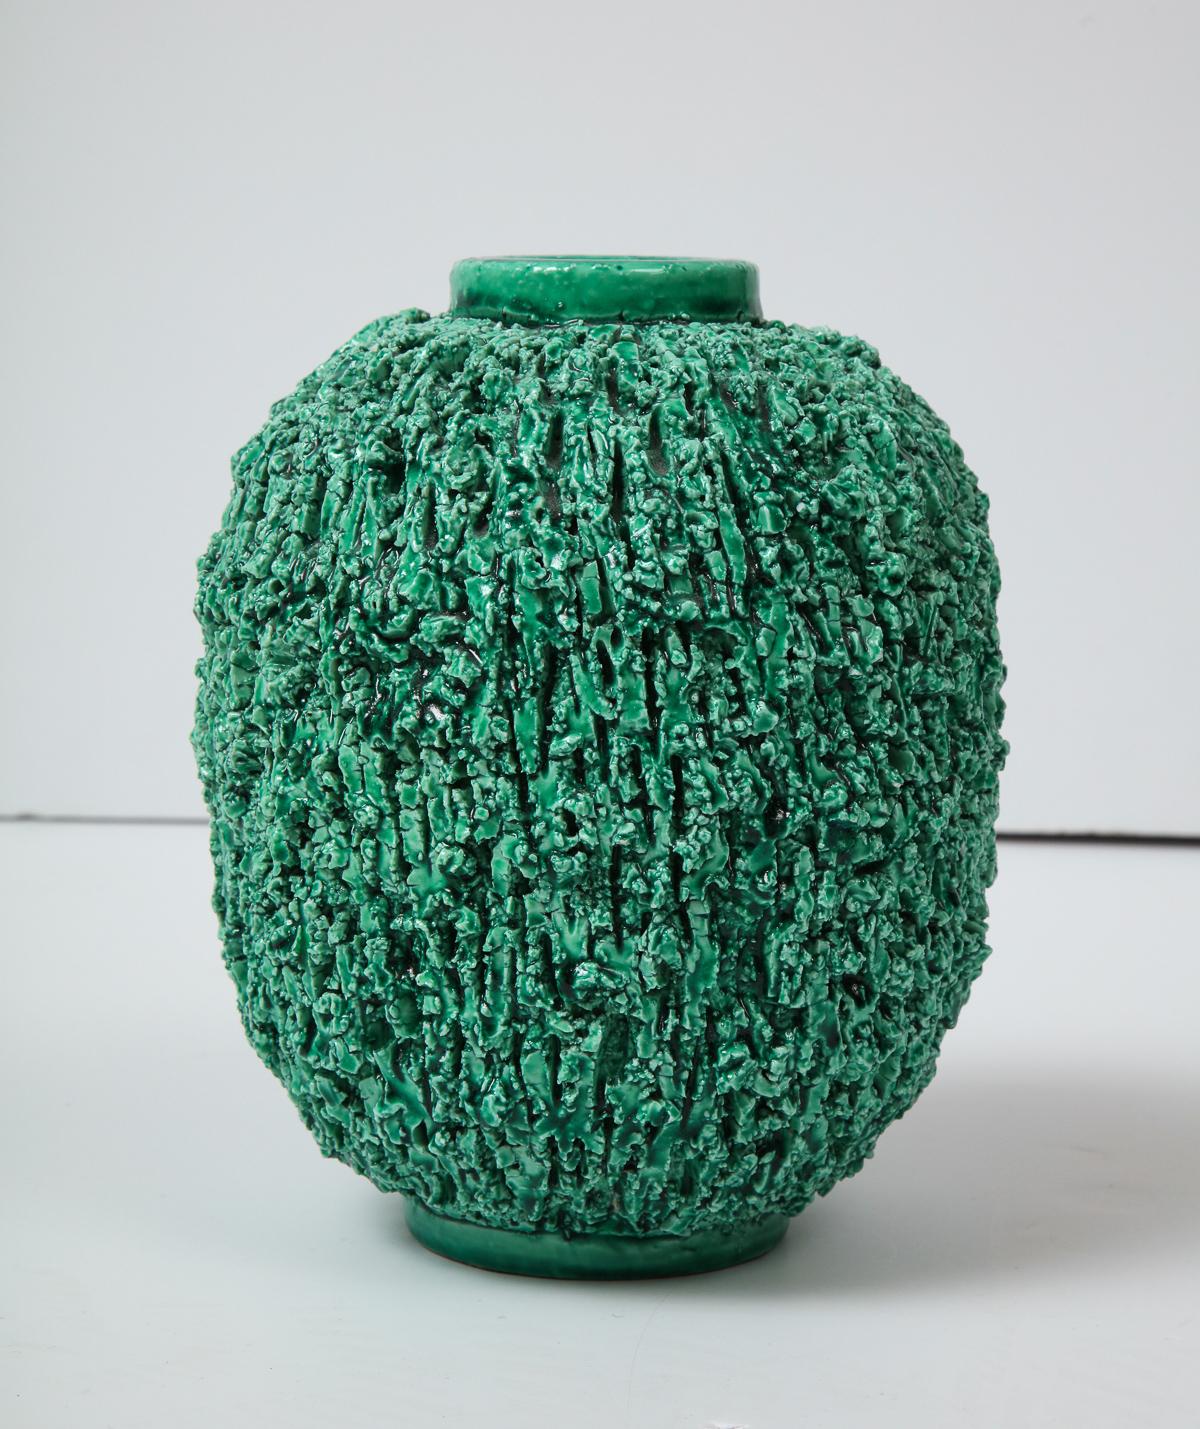 Vase décoratif en céramique verte de Gunnar Nylund, Gustavsberg, Suède, vers 1950.
Il s'agit du grand format de trois vases appelés 